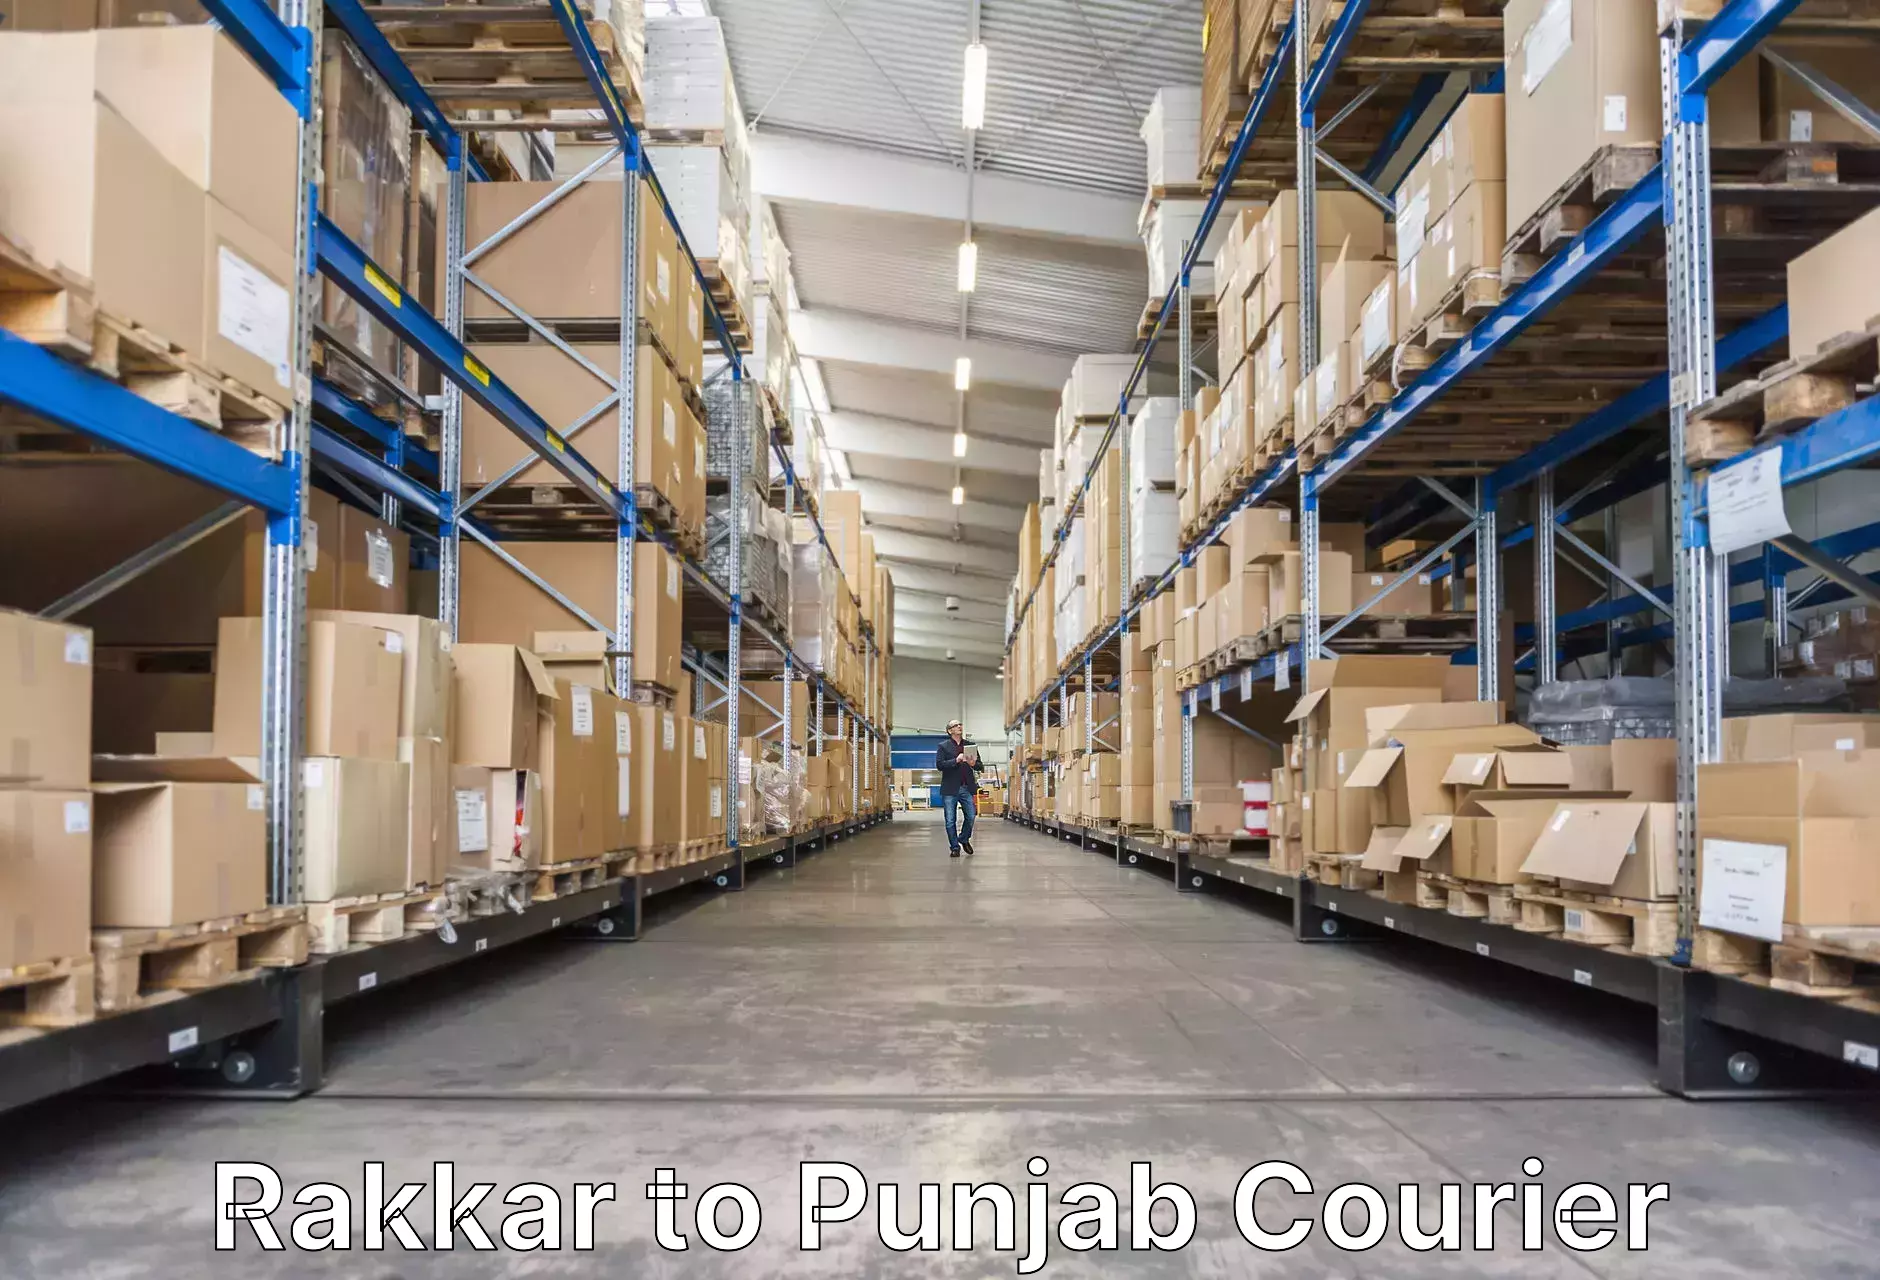 Luggage shipping planner Rakkar to Punjab